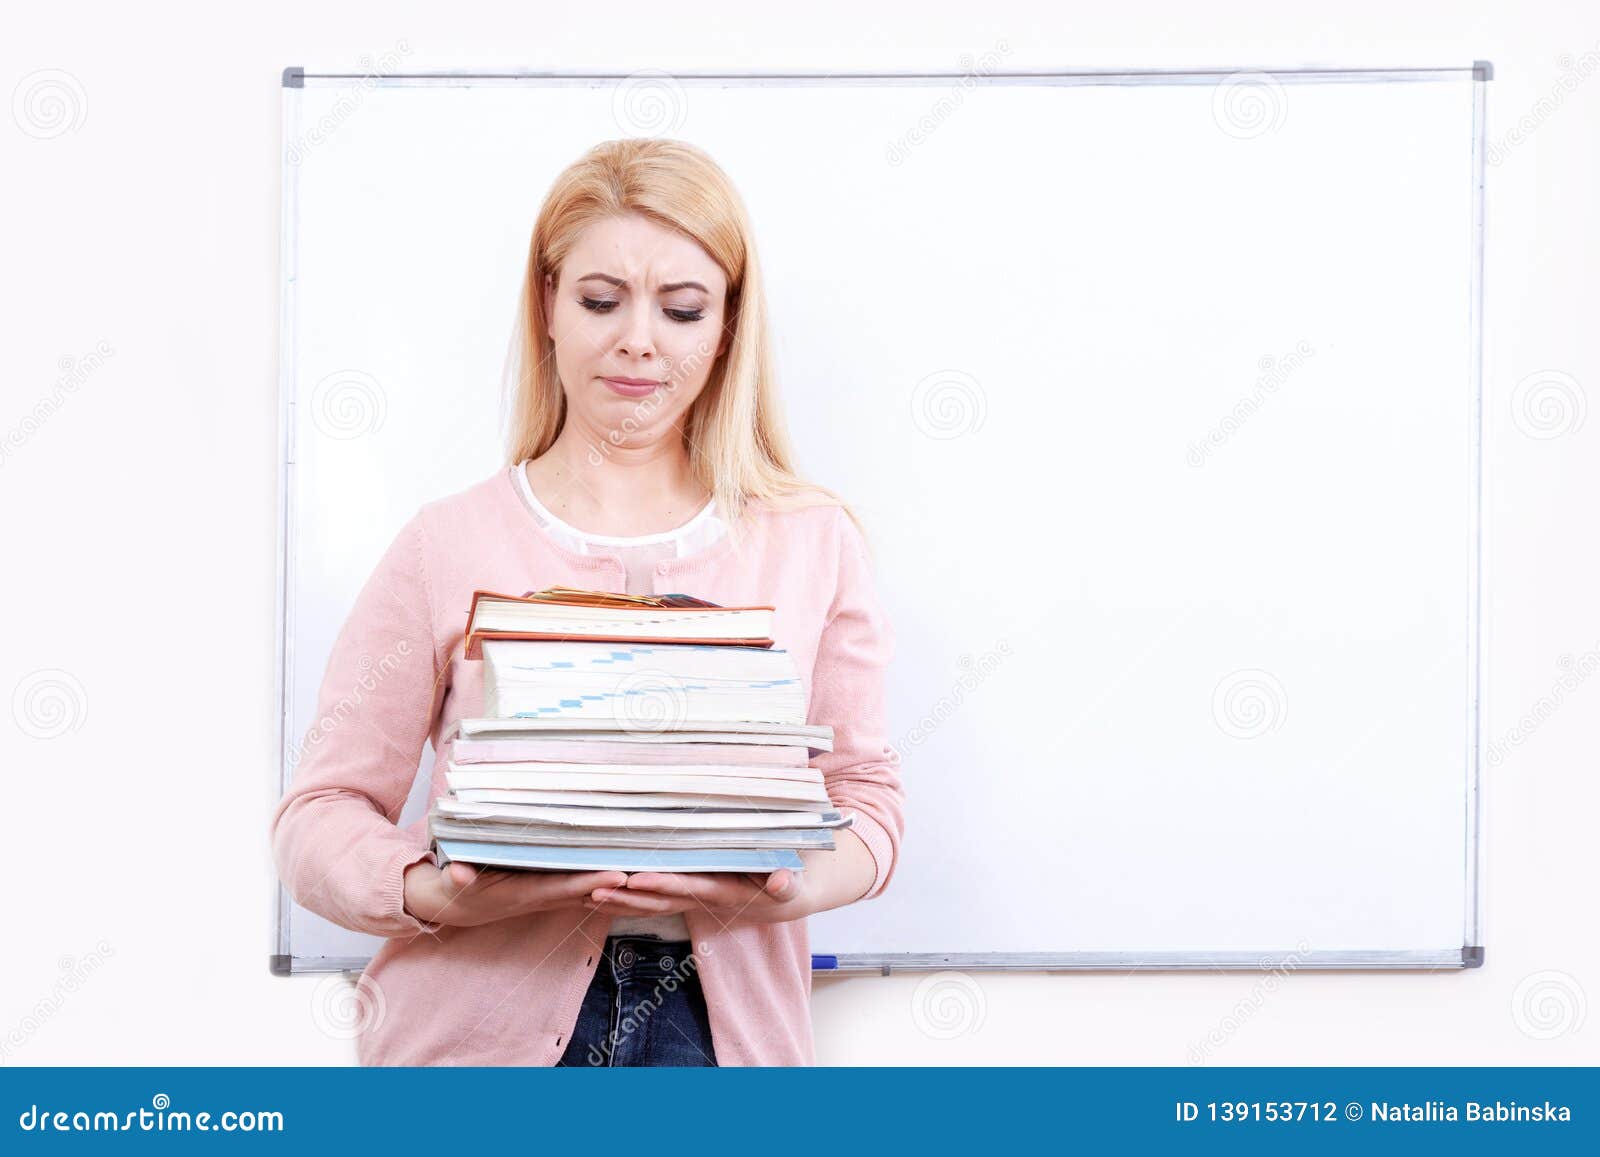 Читать рассказ училка. Портрет учителя с книгой. Учитель держит себя в руках. Учитель держит в руках книгу. Фото учителя с тетрадями за столом грустная.